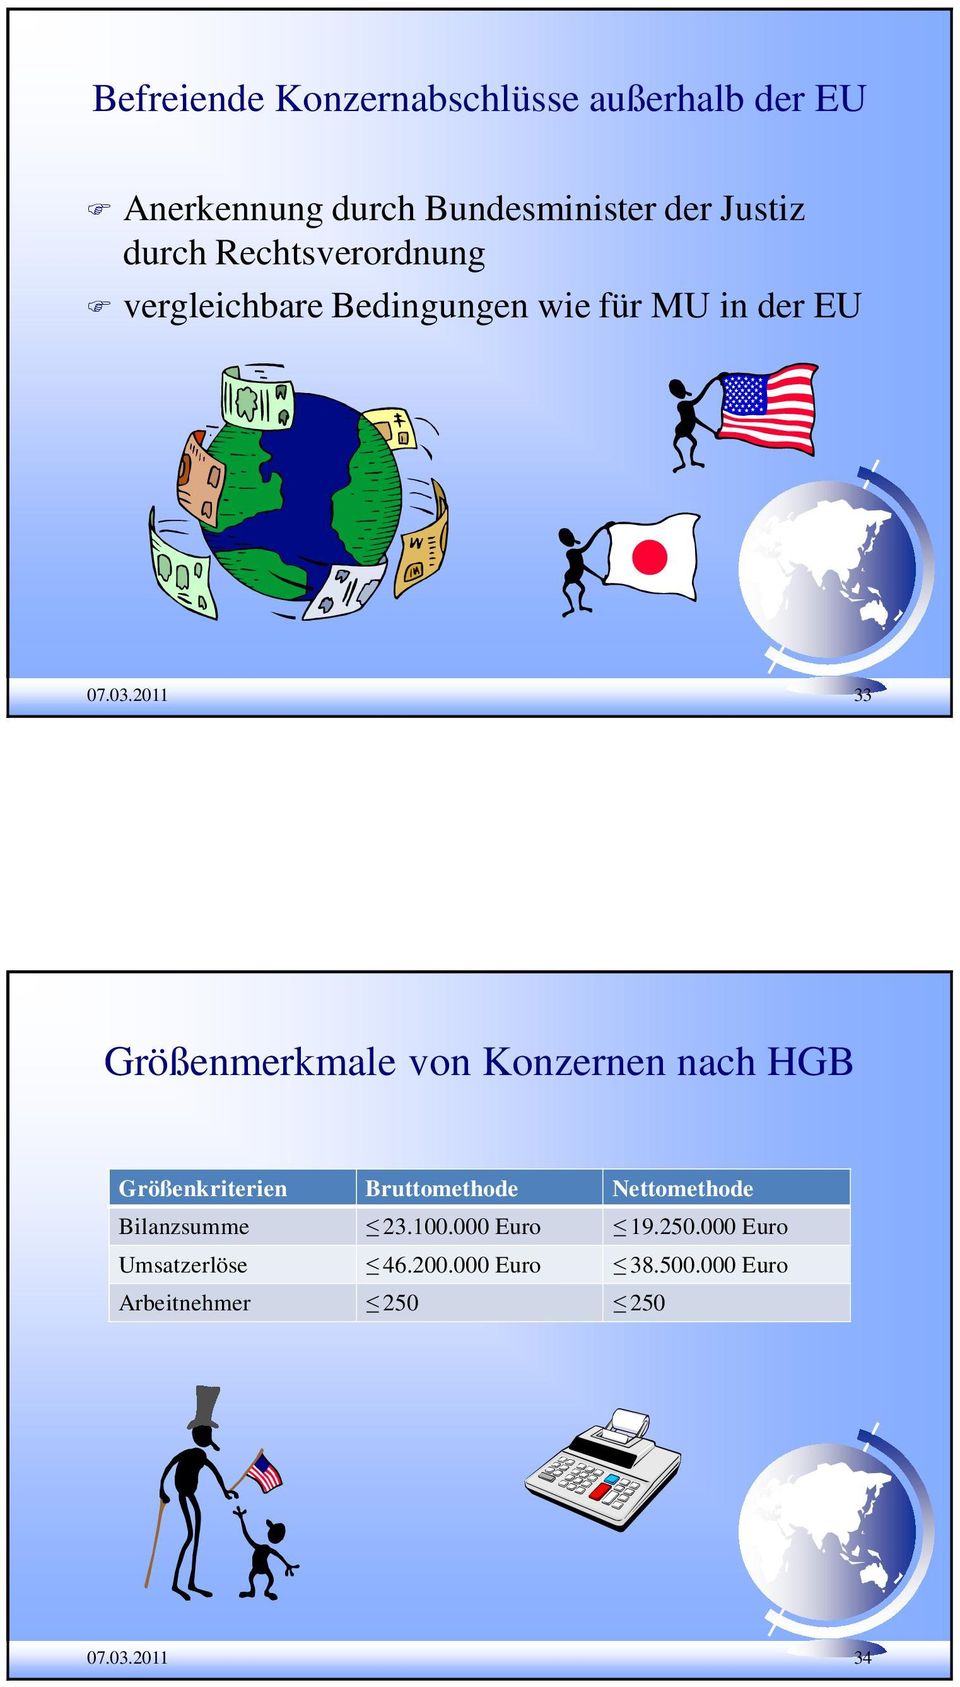 2011 33 Größenmerkmale von Konzernen nach HGB Größenkriterien Bruttomethode Nettomethode